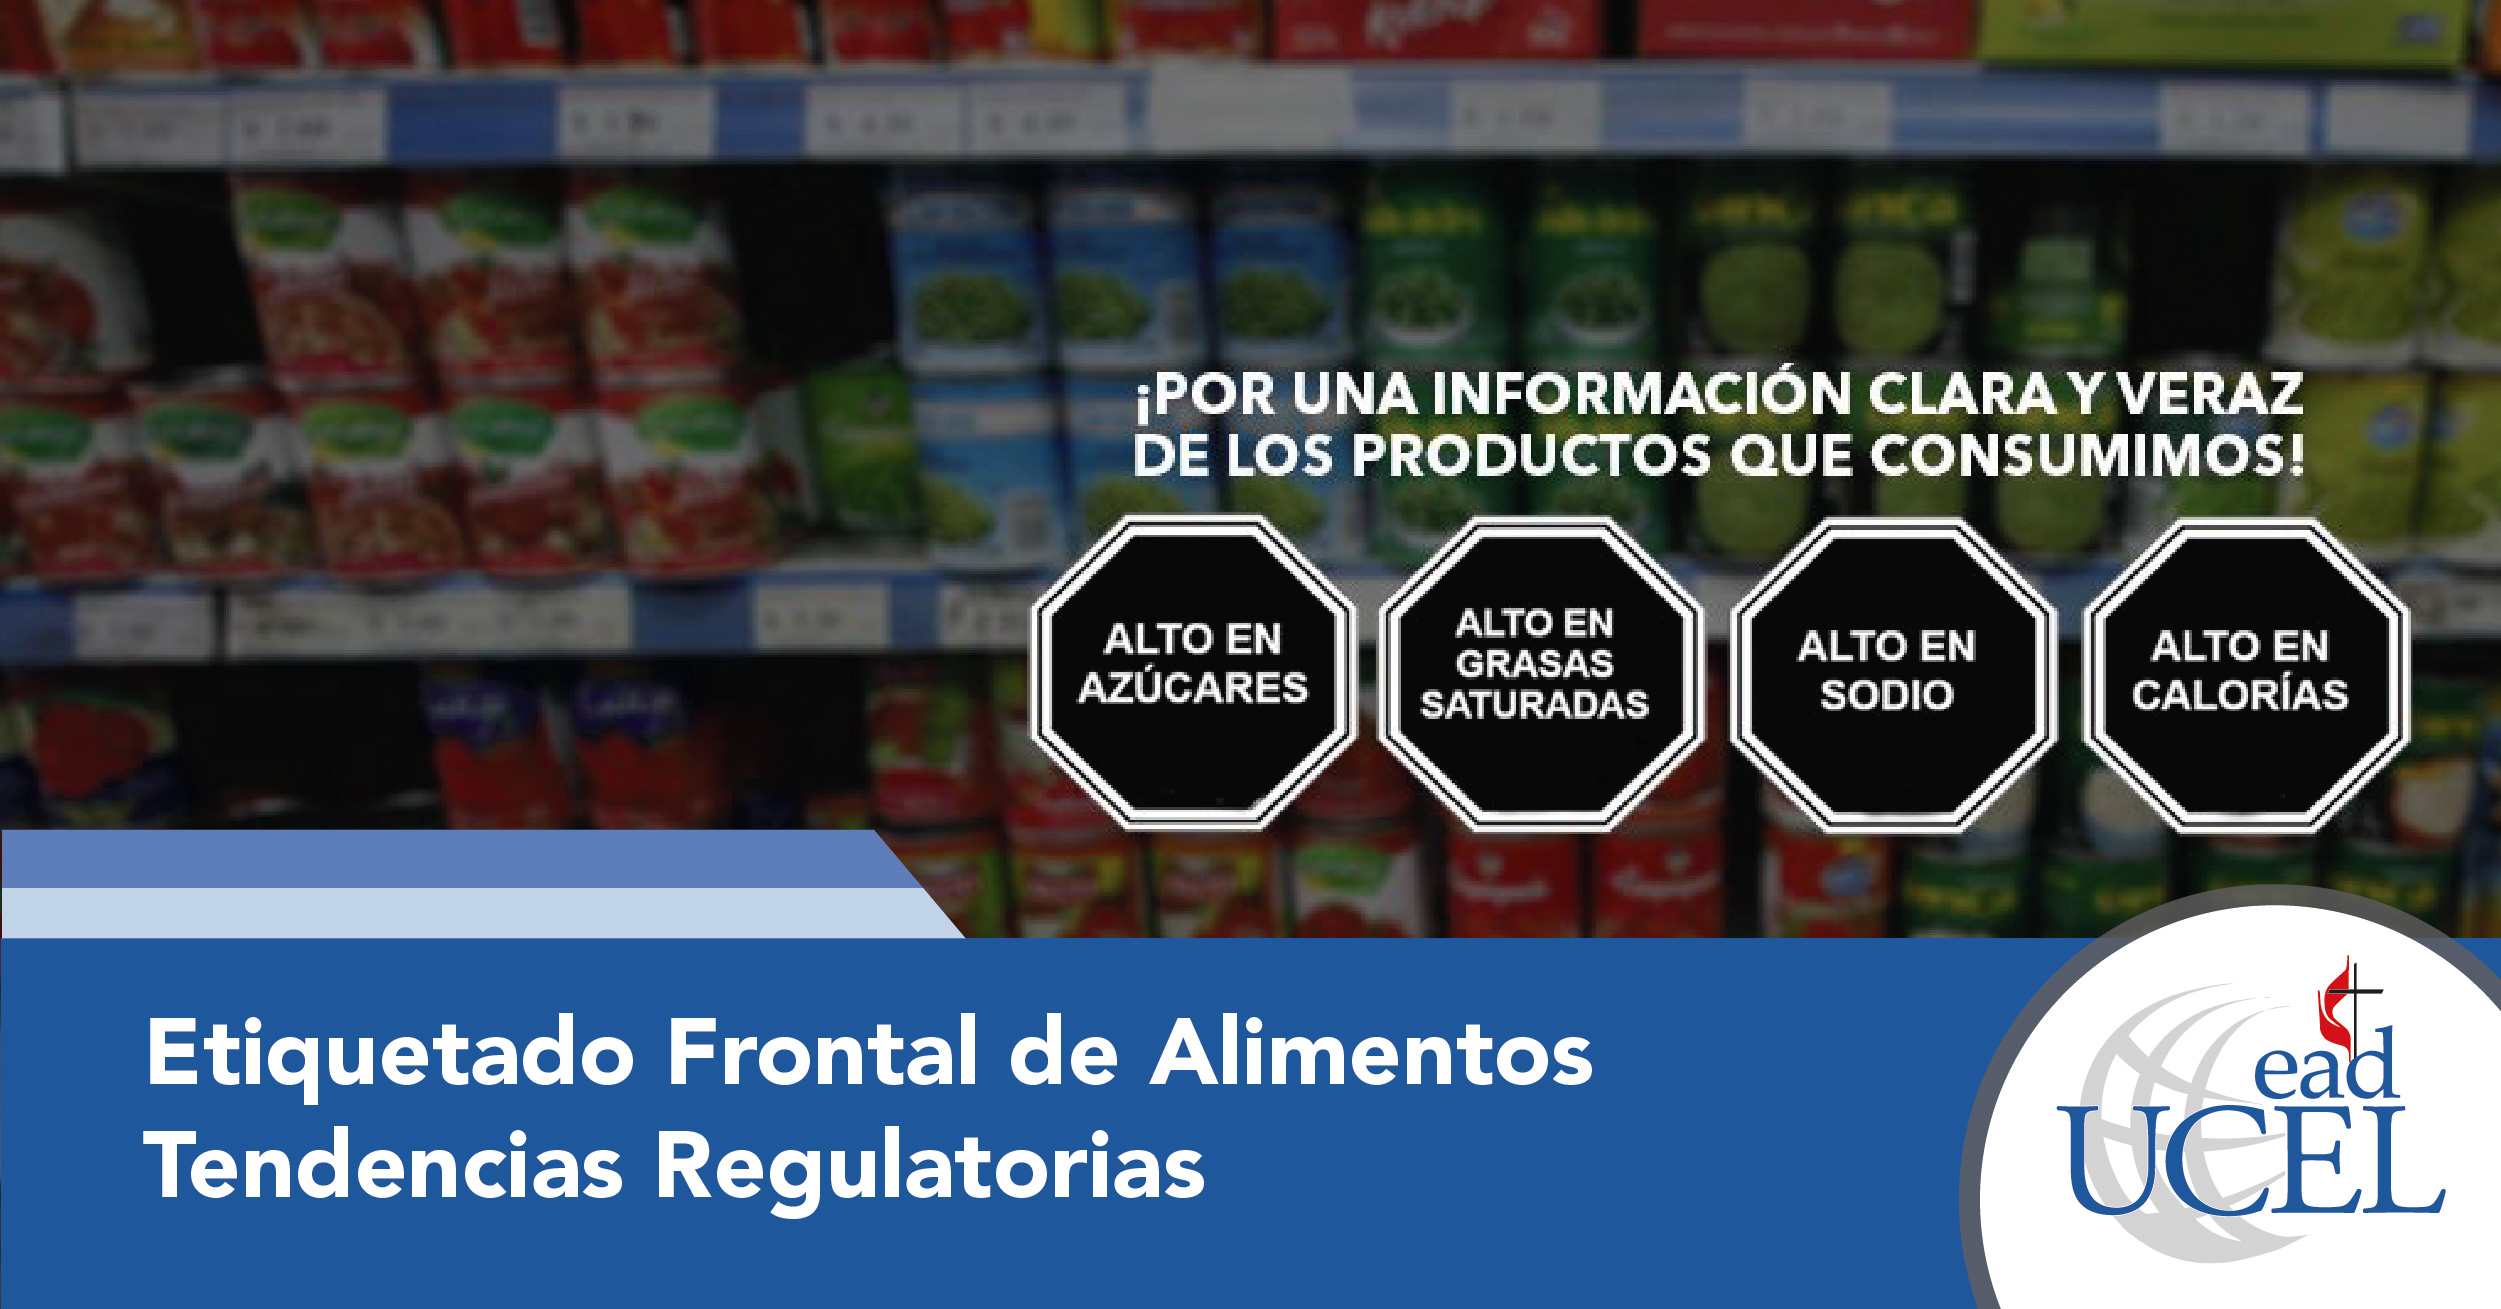 Etiquetado Frontal de Alimentos. Tendencias Regulatorias